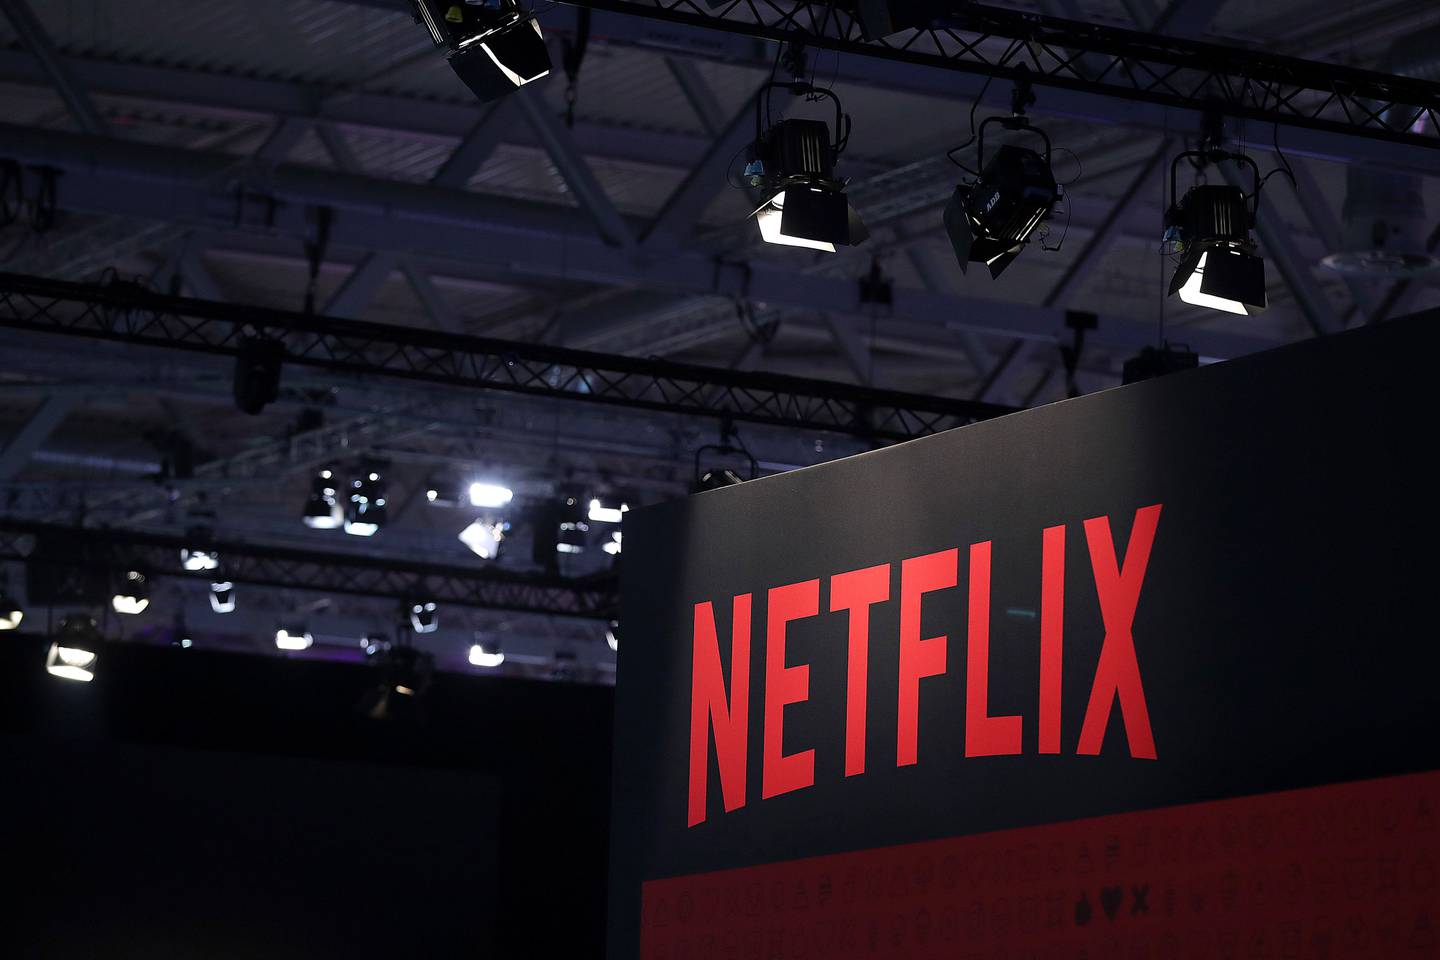 Netflix extendió a más países de América Latina el cobro adicional para los usuarios que comparten su contraseña o usan su cuenta en diferentes hogares. La medida estará vigente desde agosto.dfd